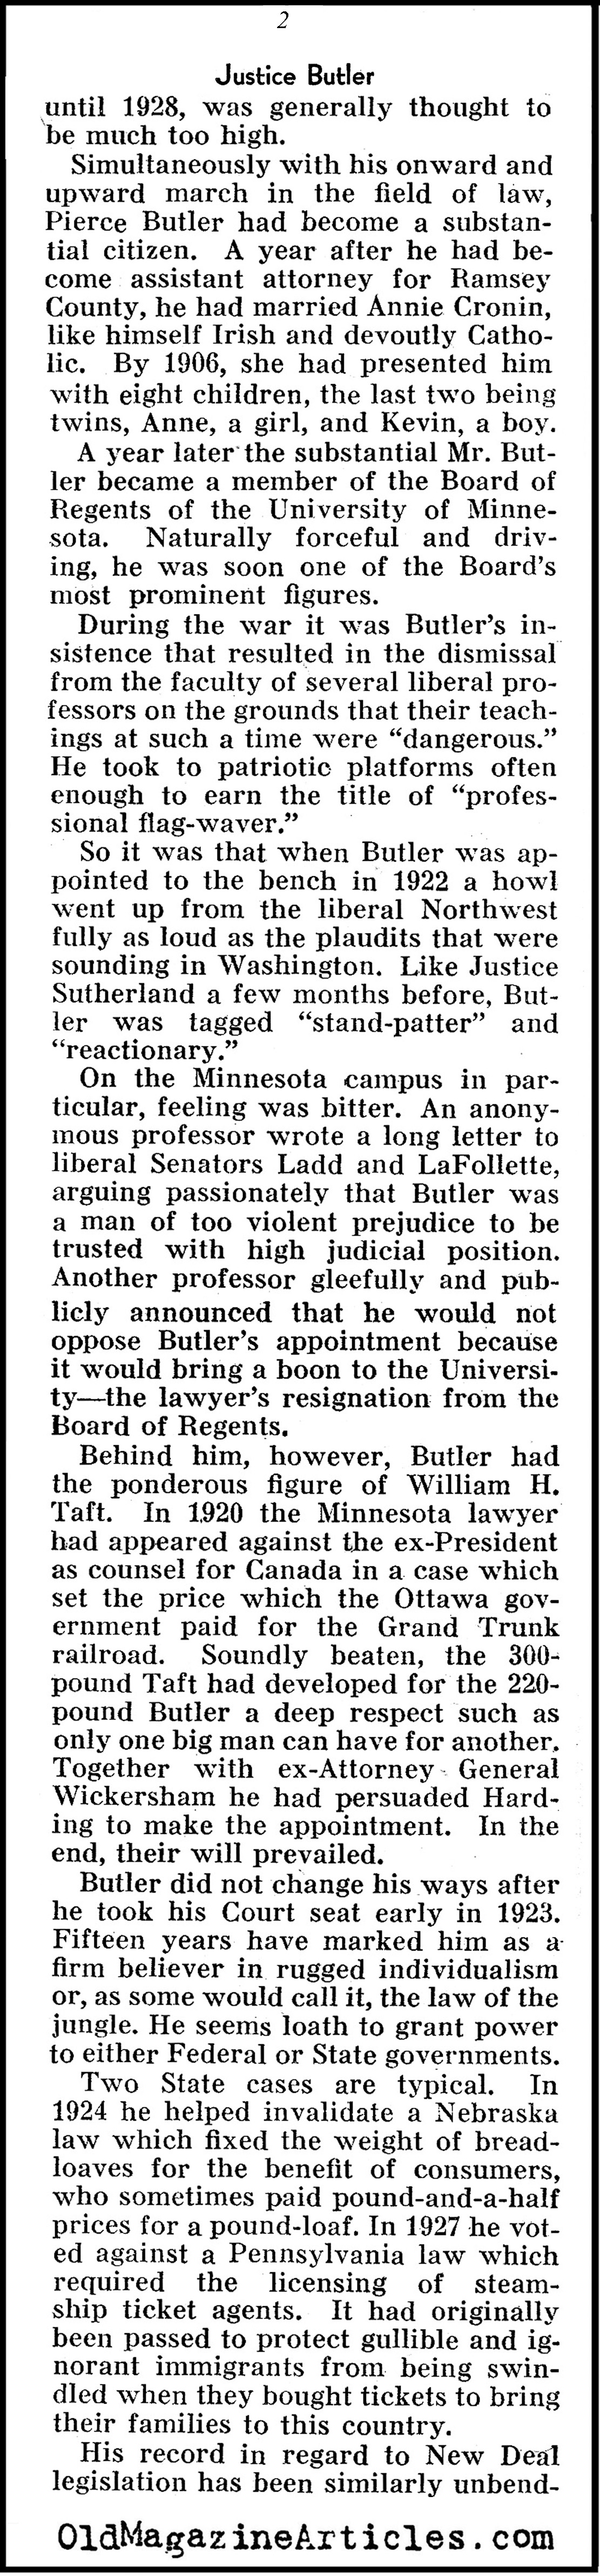 Justice Pierce Butler (Pathfinder Magazine, 1937)